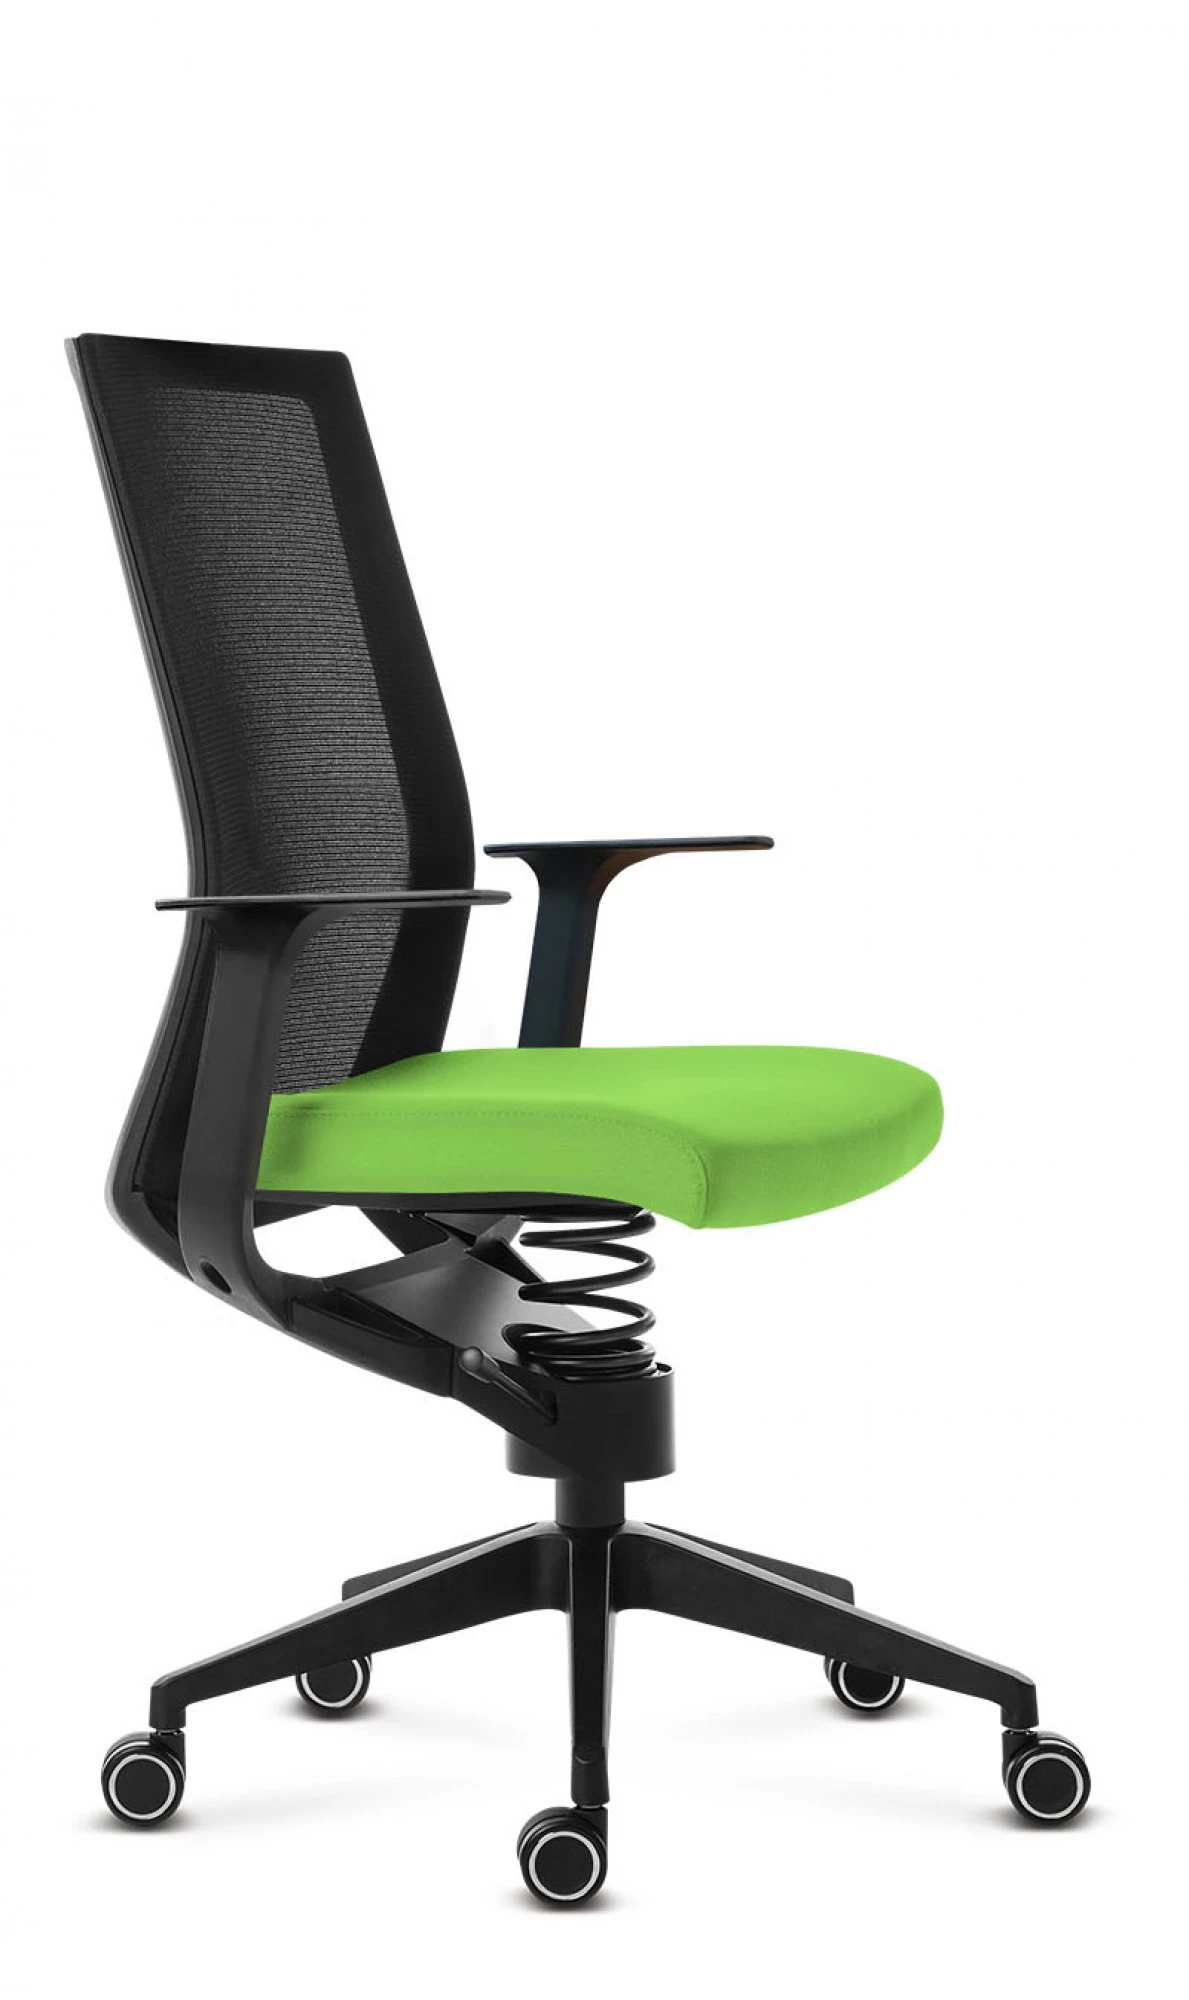 Zdravotný kancelársky stolička Adaptic EASY Zelená